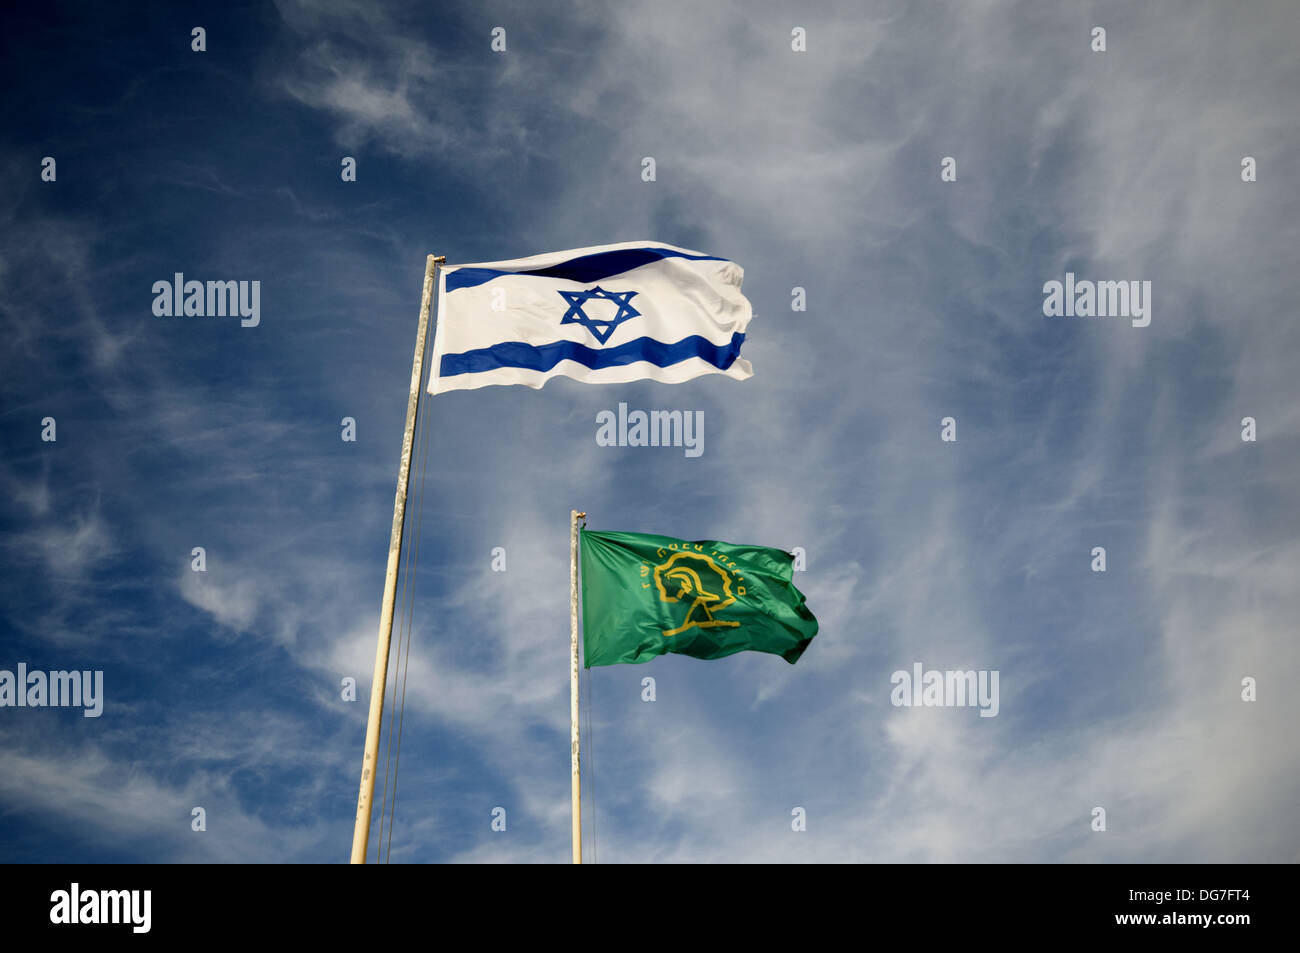 Israeli flag, Negev, Israel Stock Photo